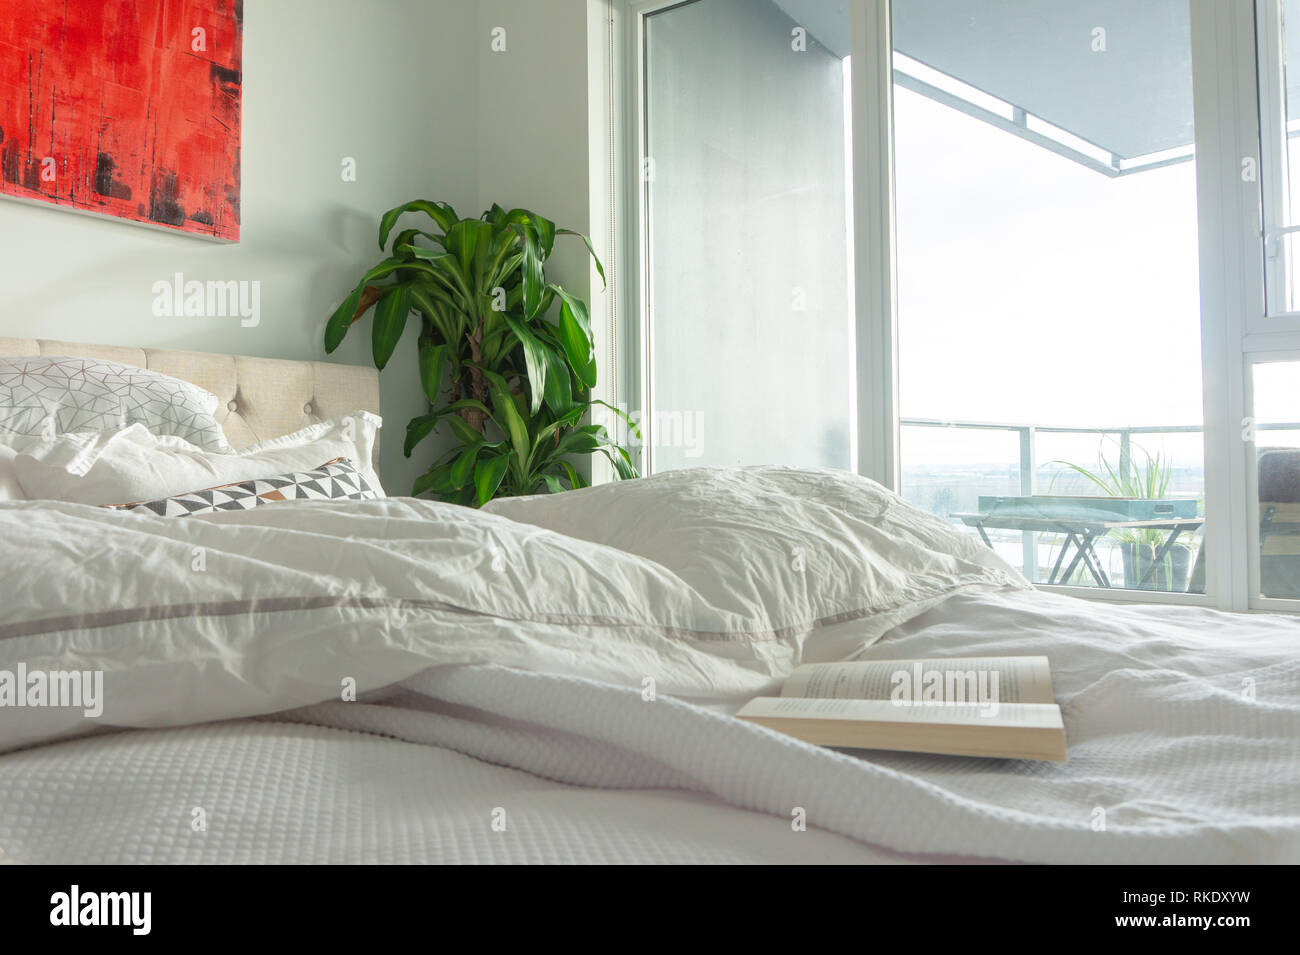 Buch über zerknittert, gebraucht Bett mit Wand Kunst in ein helles Apartment oder vrbo, Schlafzimmer mit großen Fenstern und Fenster Licht. Darstellung einer staycation, entspannend. Stockfoto